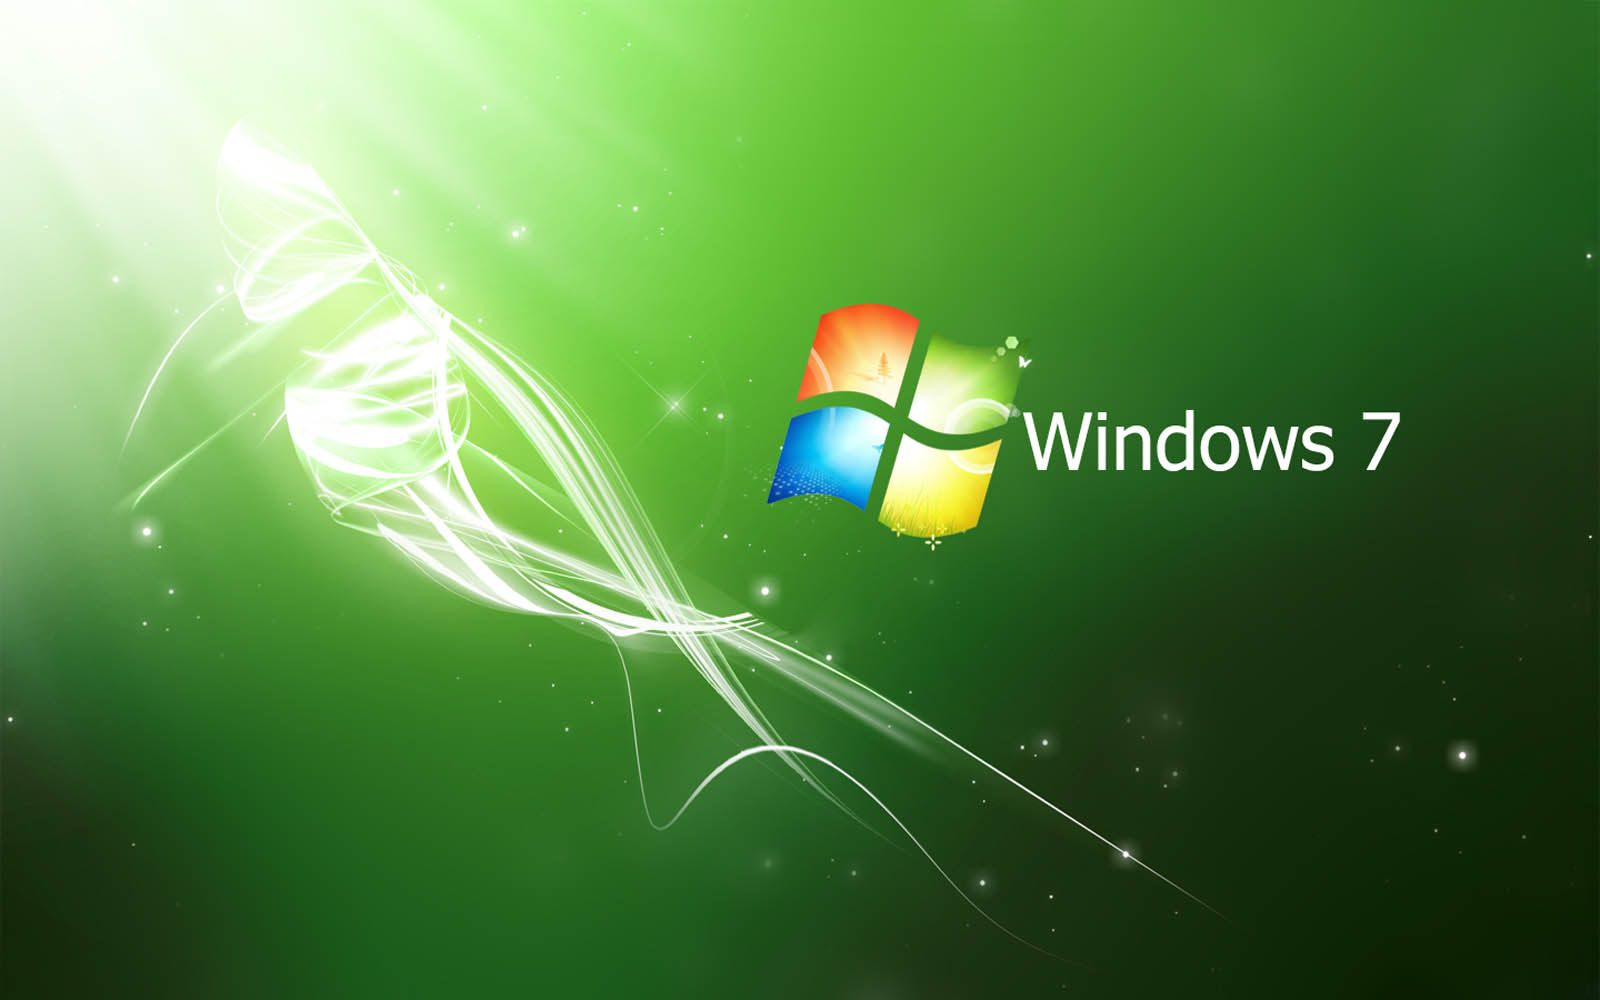 Windows 7 Wallpapers là bộ sưu tập hình nền đẹp và đa dạng nhất từ trước đến nay của hệ điều hành Windows của Microsoft. Hình nền có các phong cách khác nhau, từ đơn giản cho đến phức tạp, đảm bảo rằng bạn sẽ tìm thấy điều gì đó phù hợp với mình.